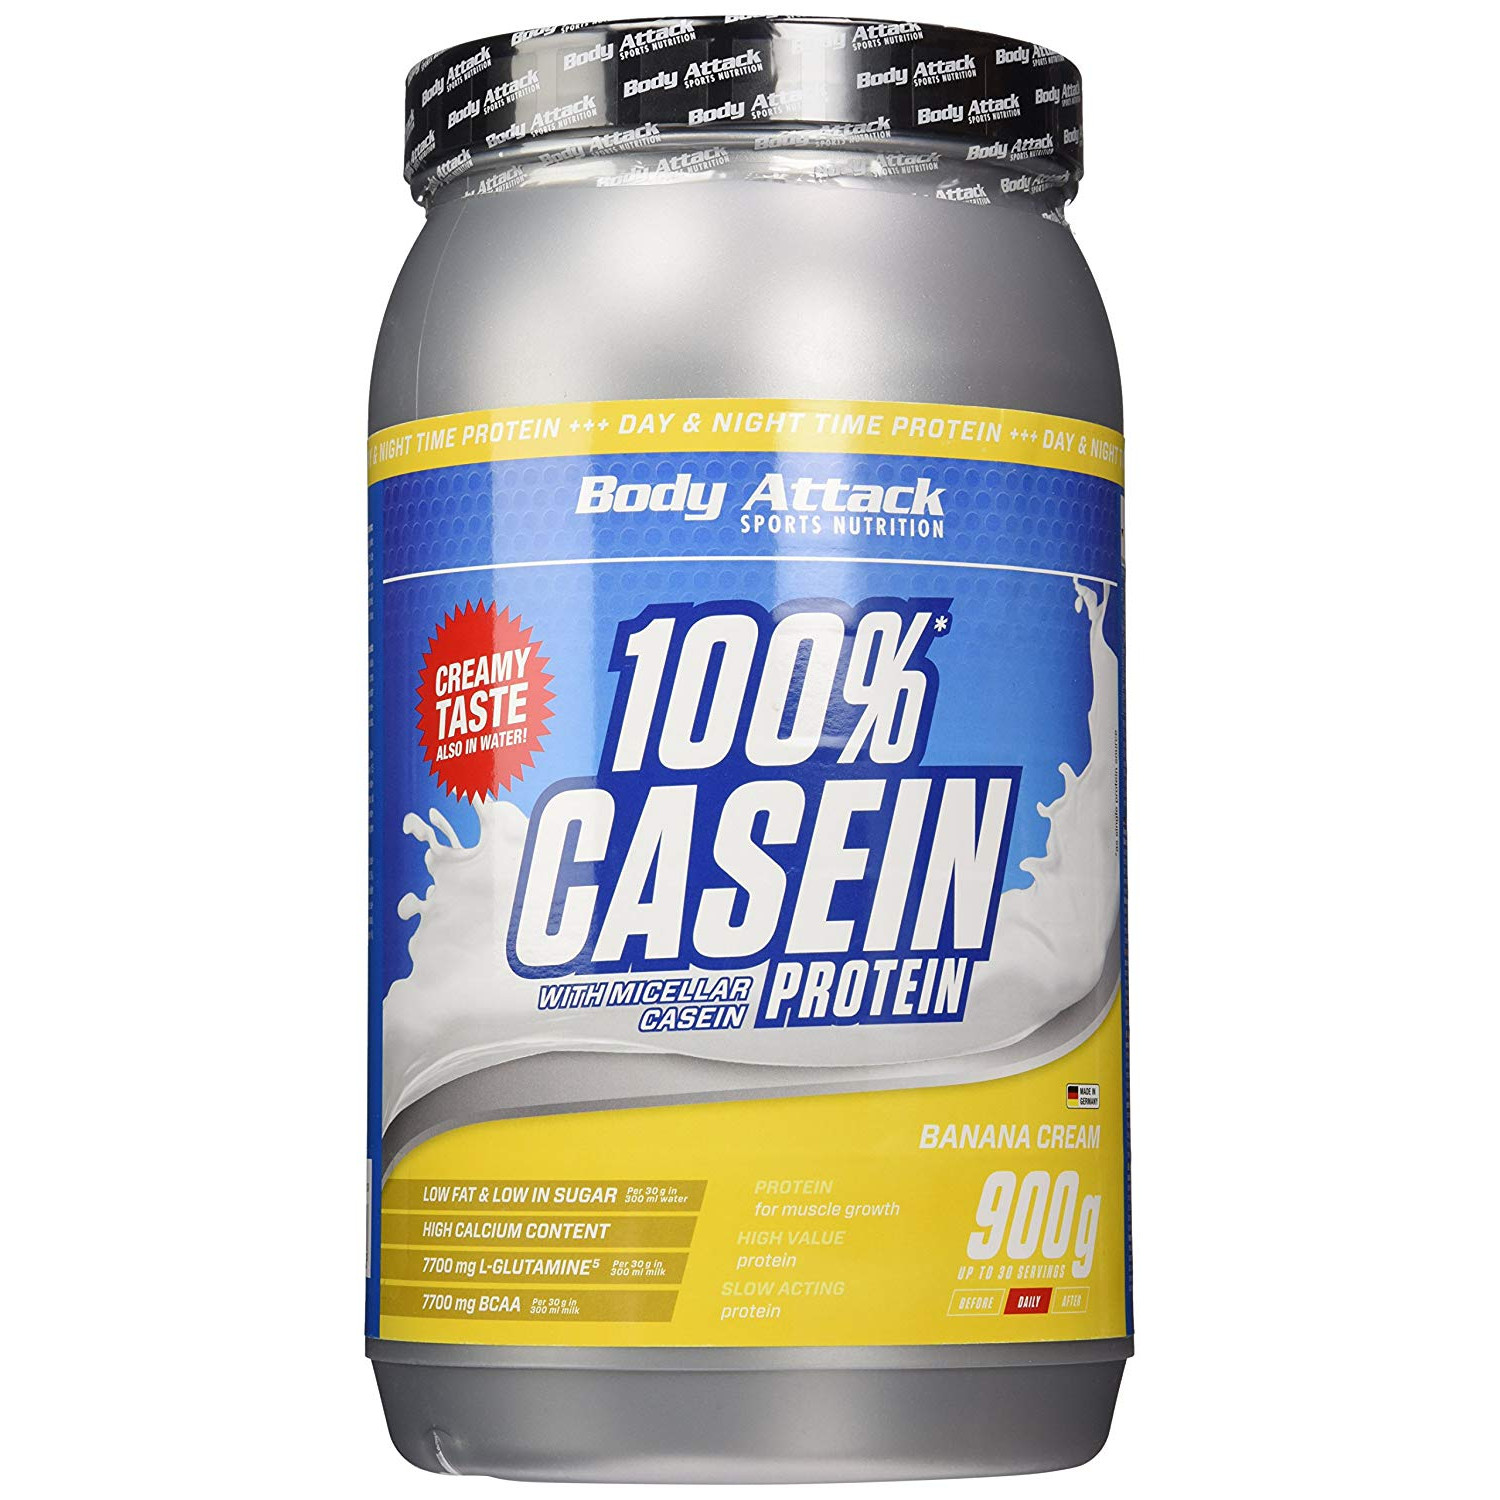 BODY ATTACK 100% Casein Protein 900g